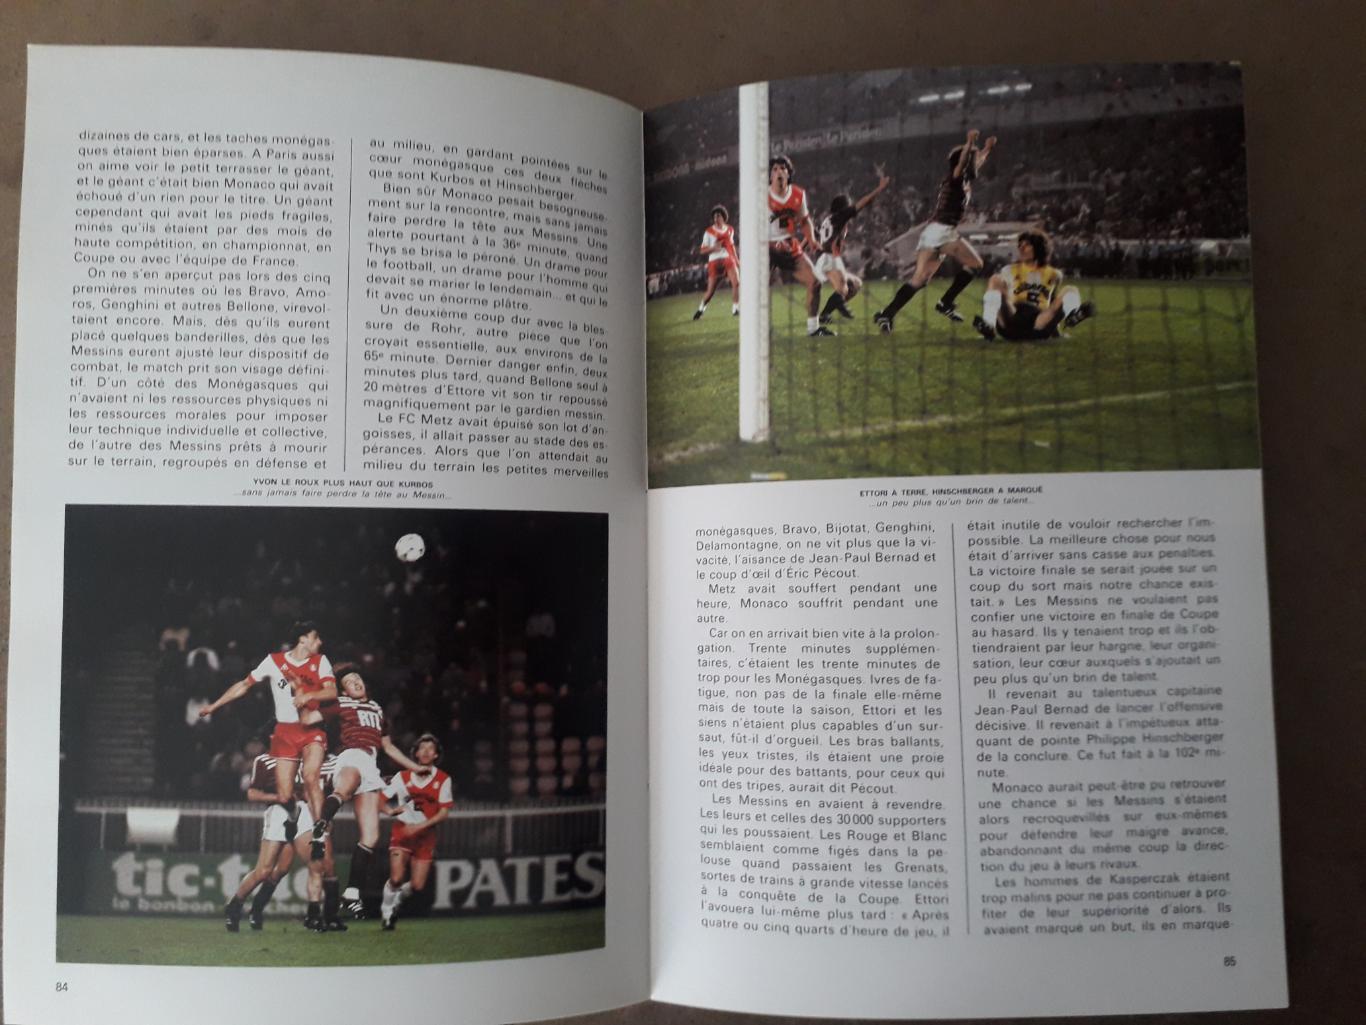 Le livre d'or du football 1984 4